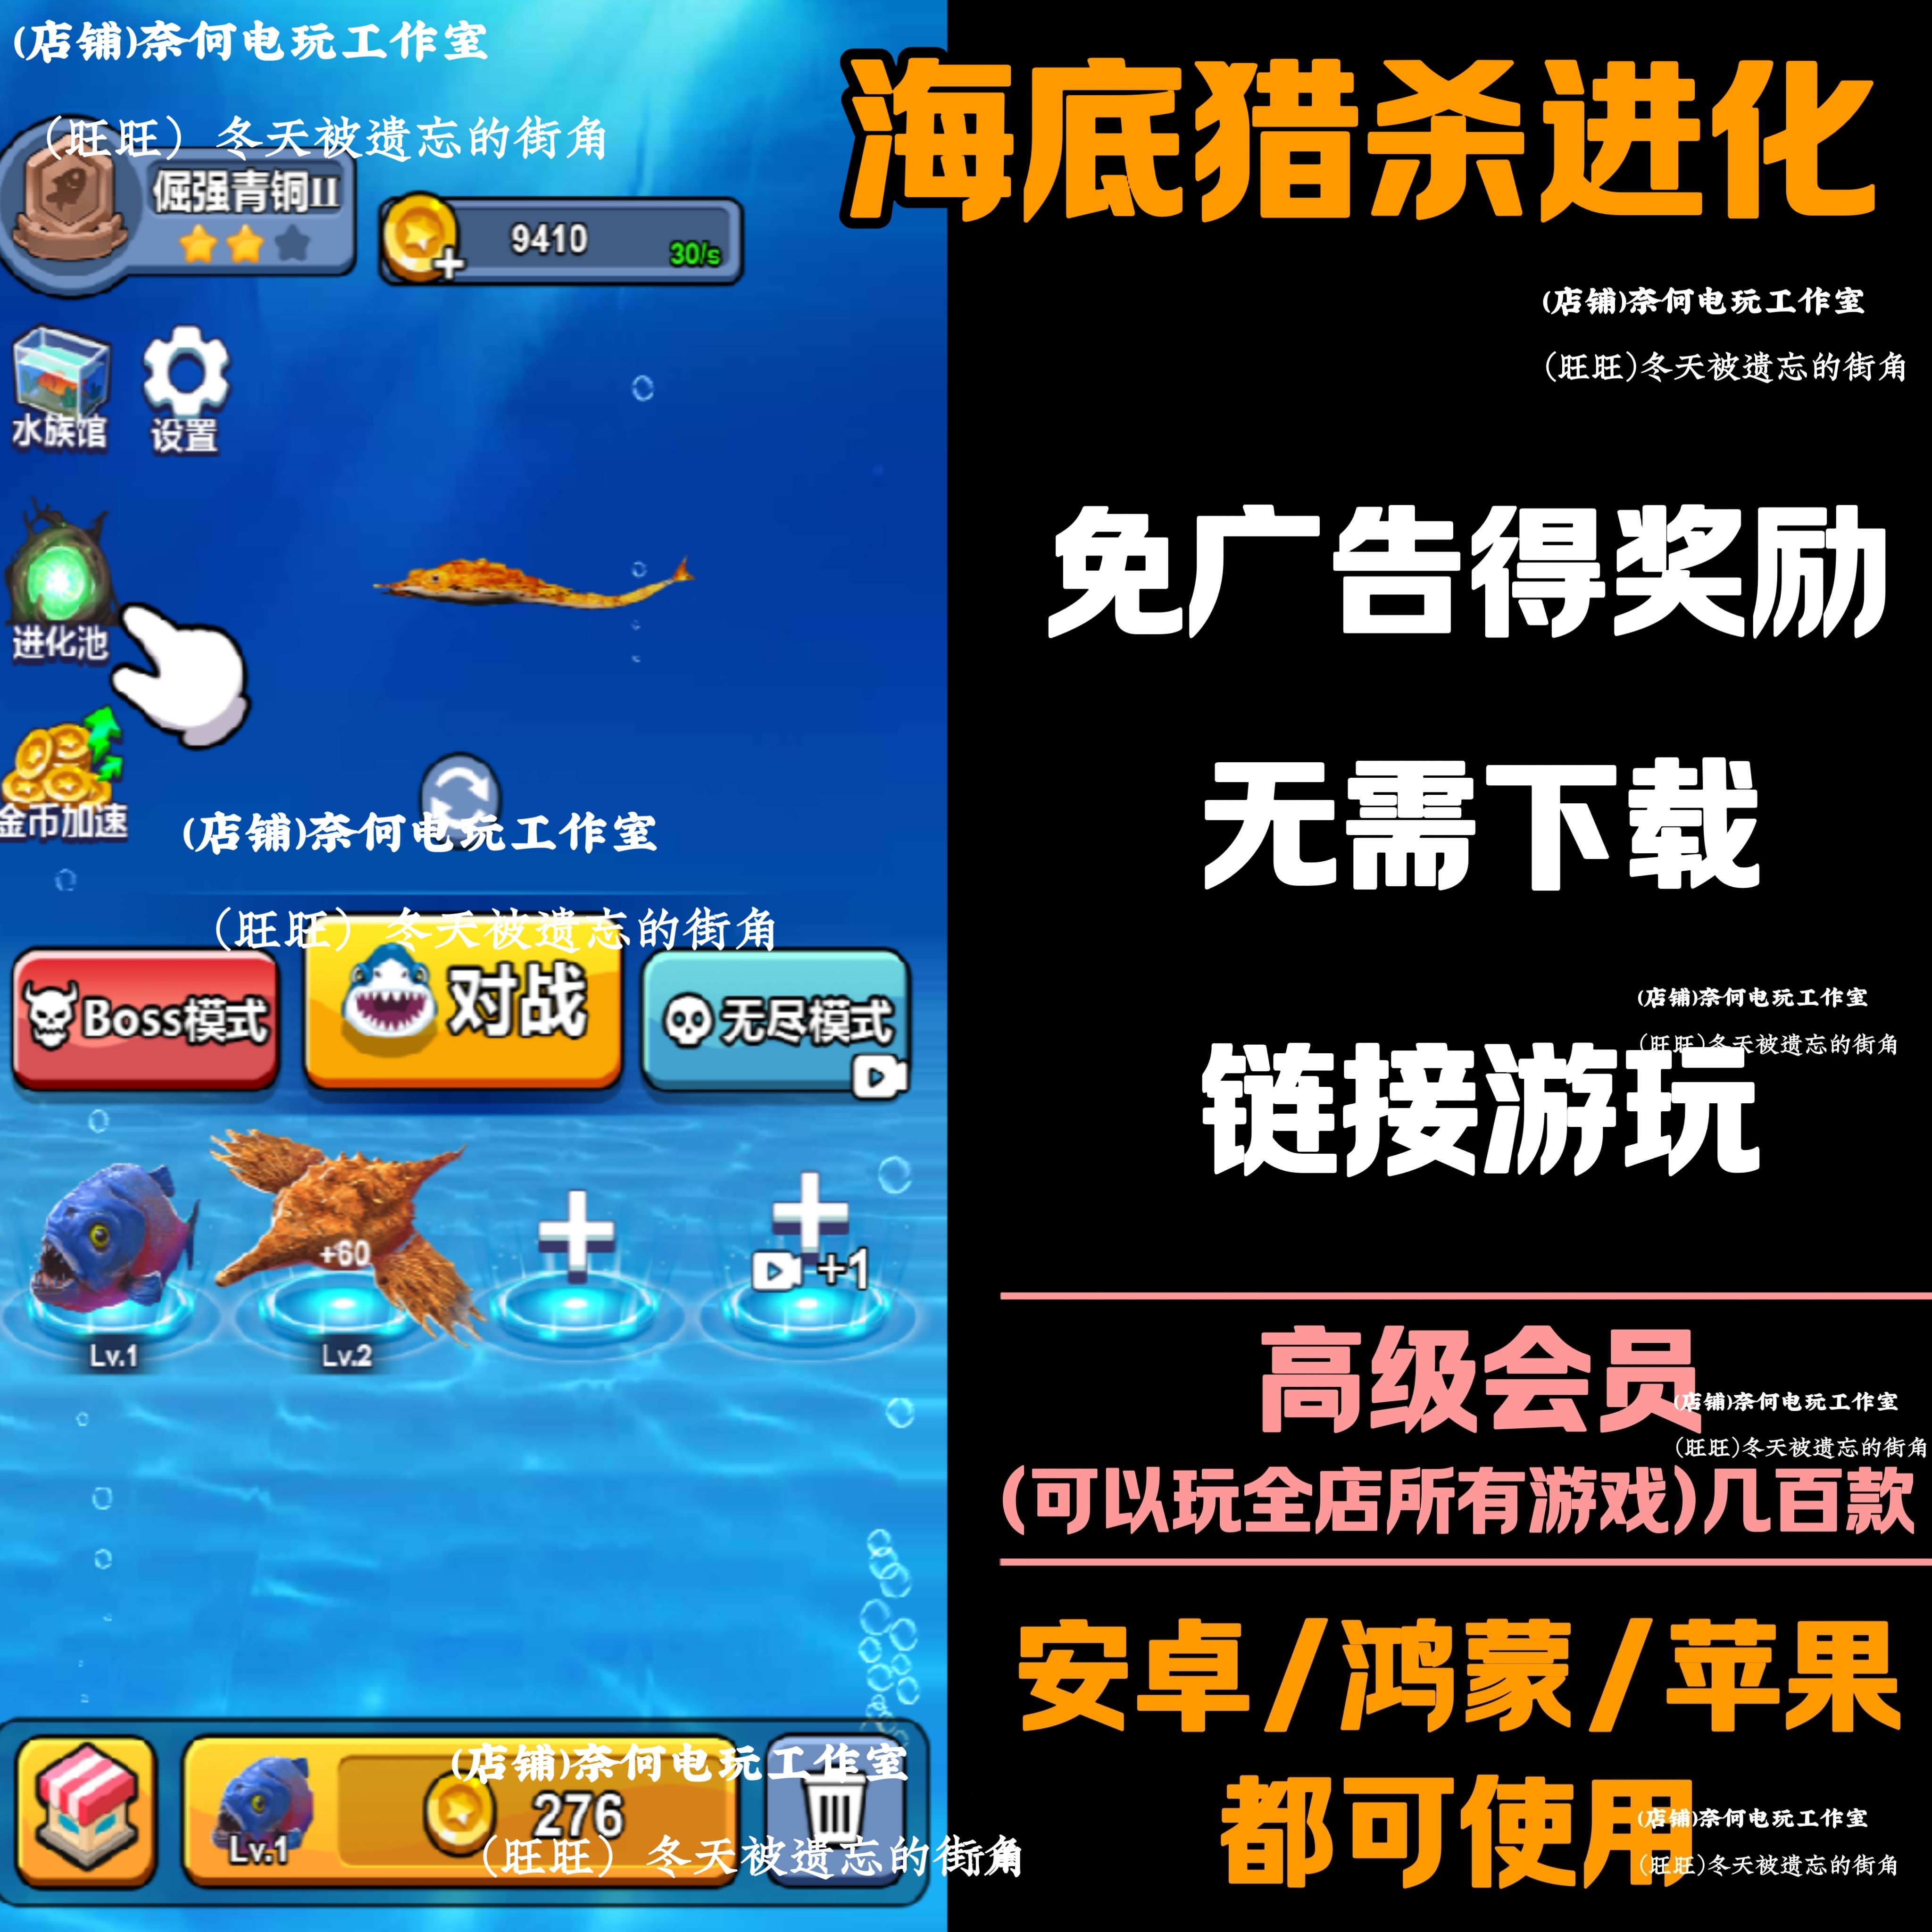 海底猎杀进化免广告 安卓苹果ios 链接游玩  抖音小游戏 自动发货